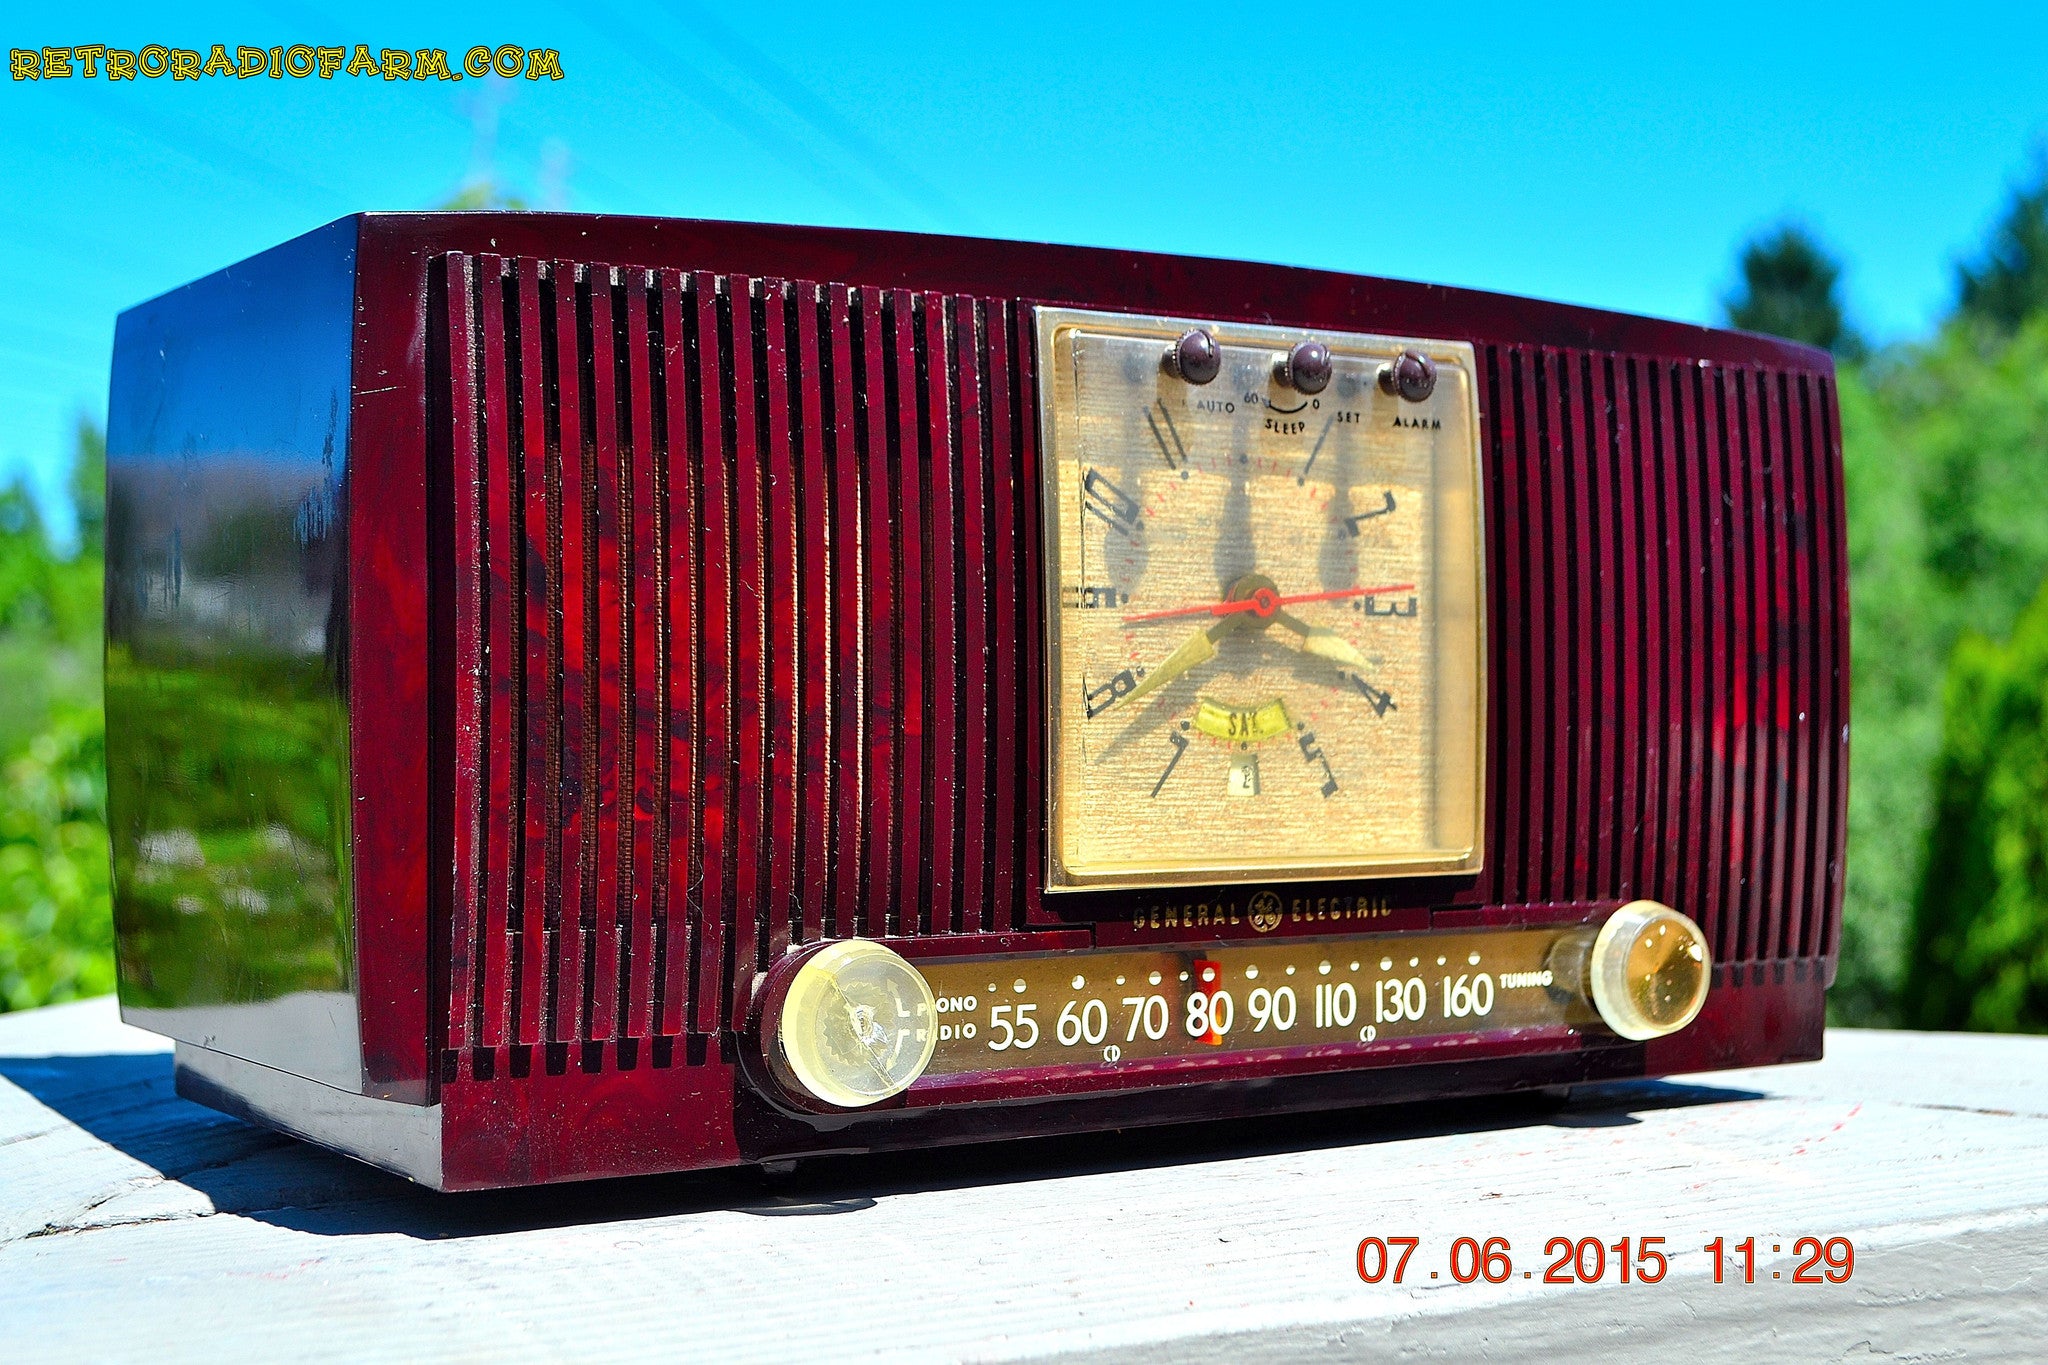 SOLD! - July 28, 2015 - BLUETOOTH MP3 READY Elegant Burgundy 1955 General Electric Model 543 Retro AM Clock Radio Works! - [product_type} - General Electric - Retro Radio Farm